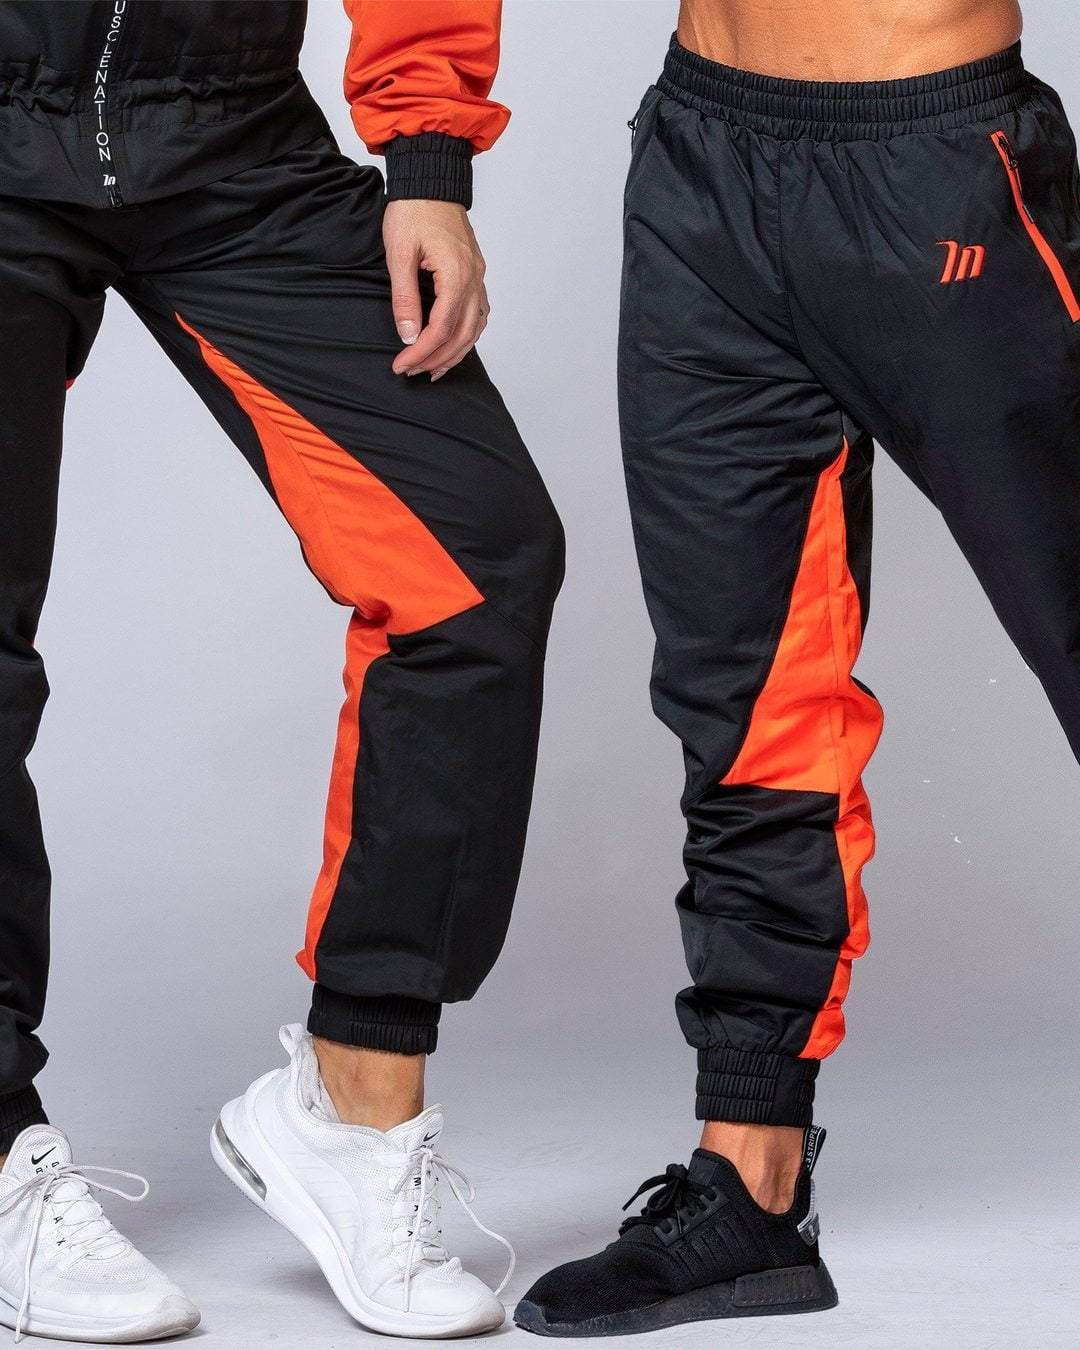 ZEEL Waterproof Black Orange Strip Pant